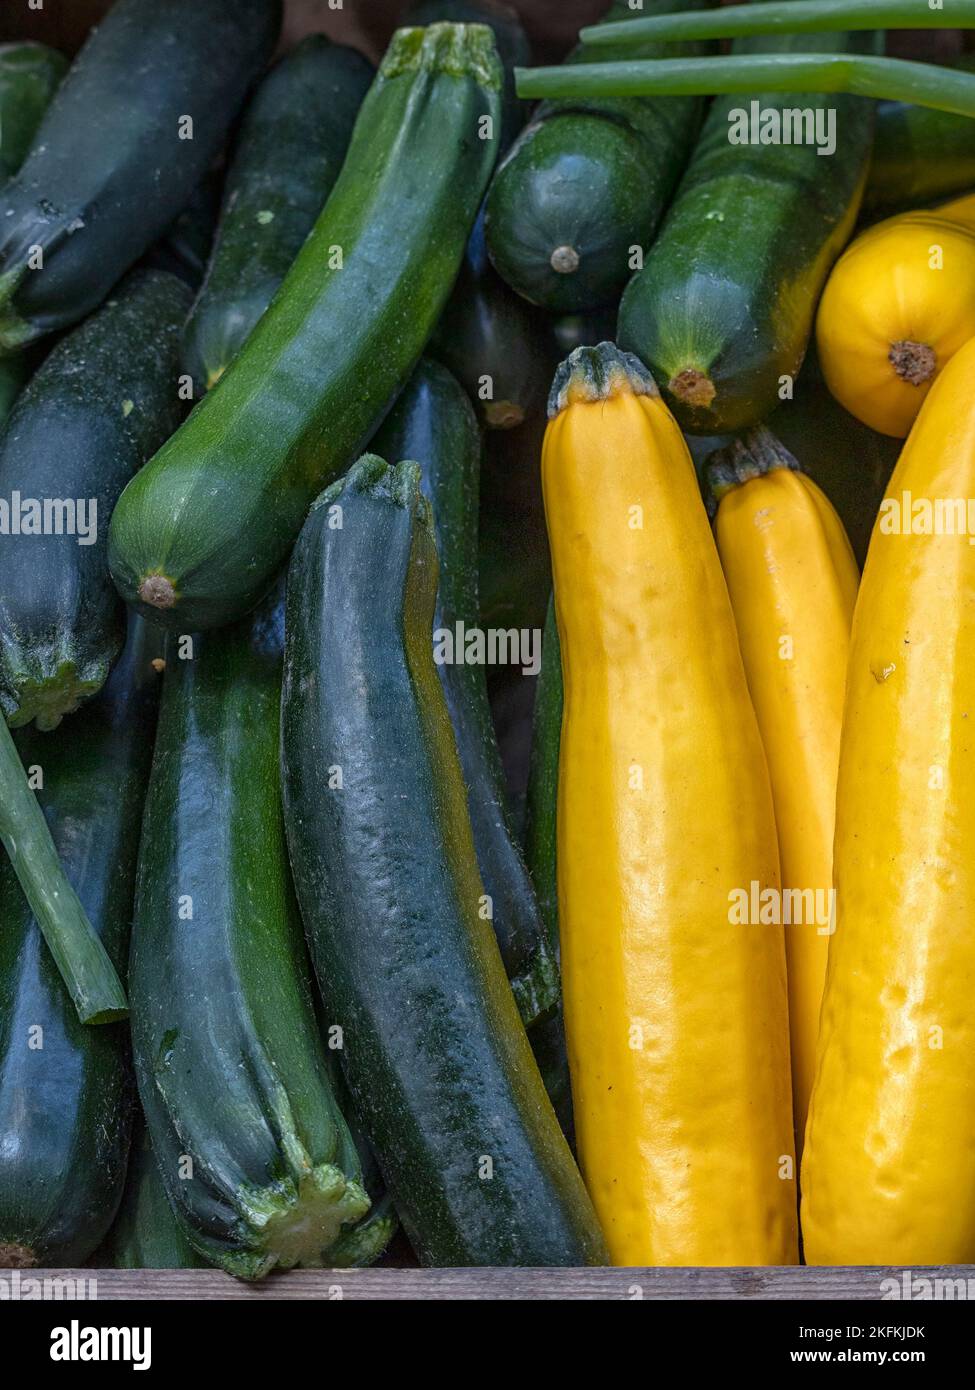 Courgettes fresco crudo verde e giallo (Zucchini) su una bancarella di fruttivendolo in un mercato alimentare Foto Stock